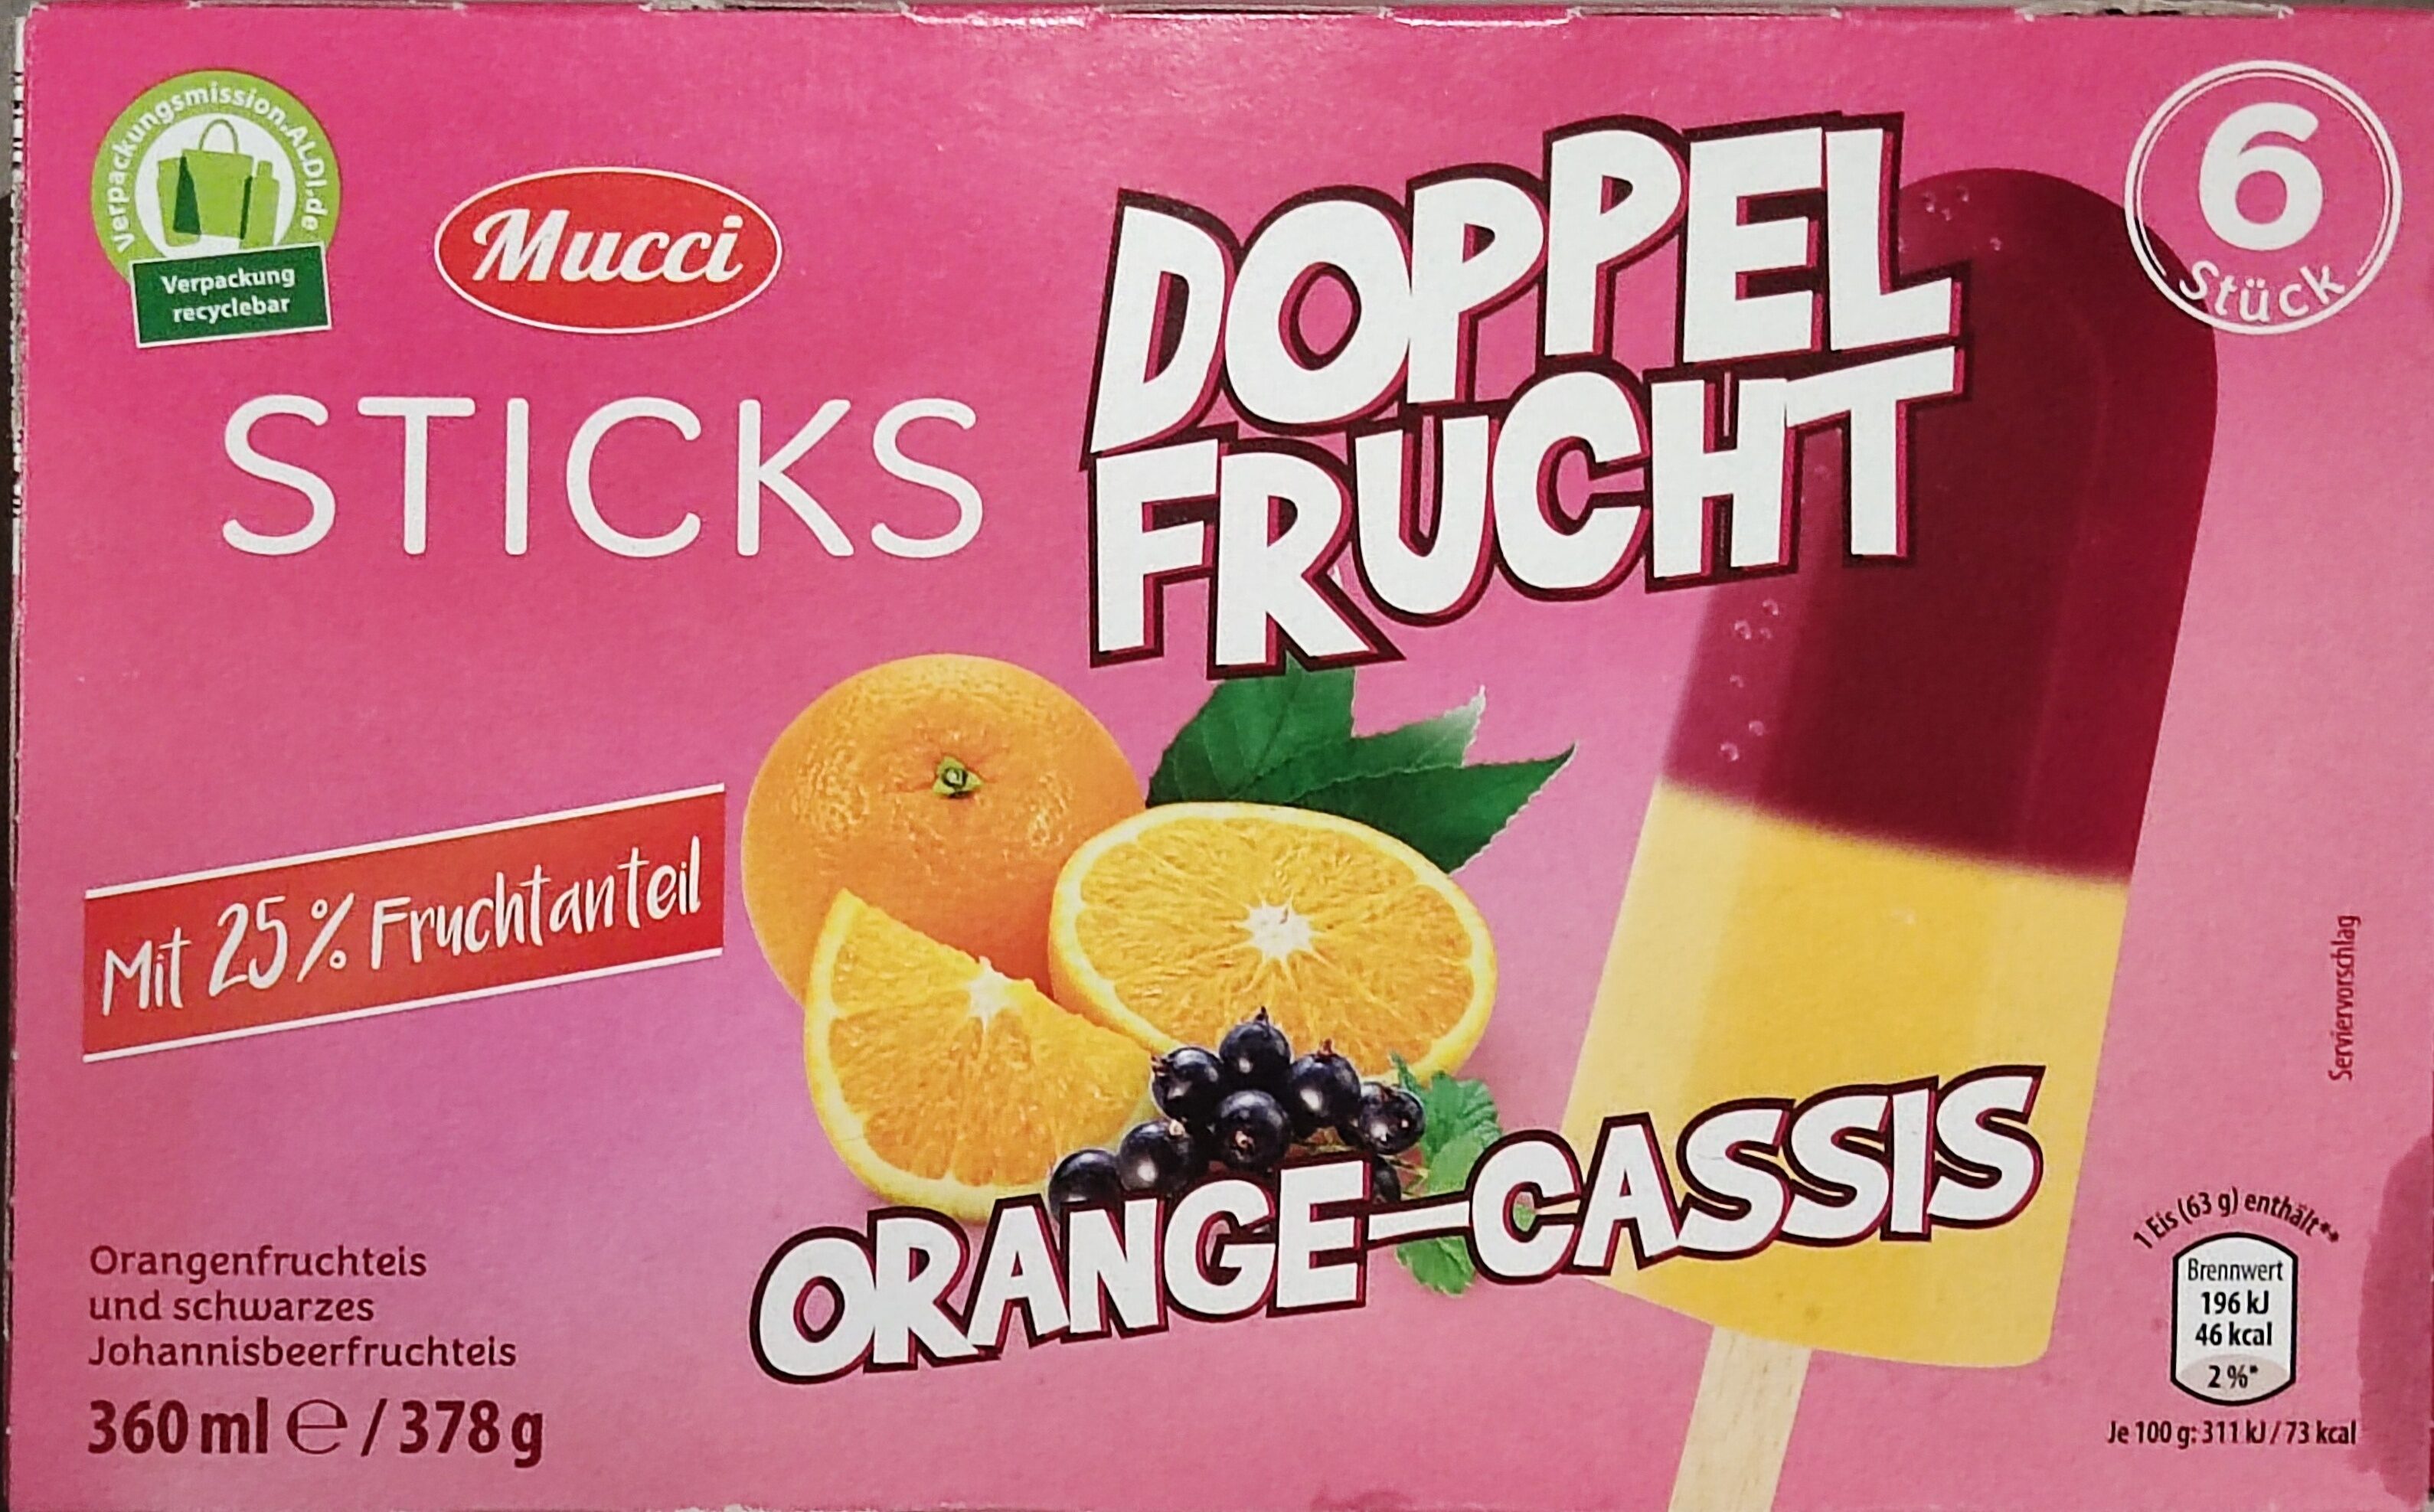 Doppelfrucht Sticks - Orange-Cassis - Produkt